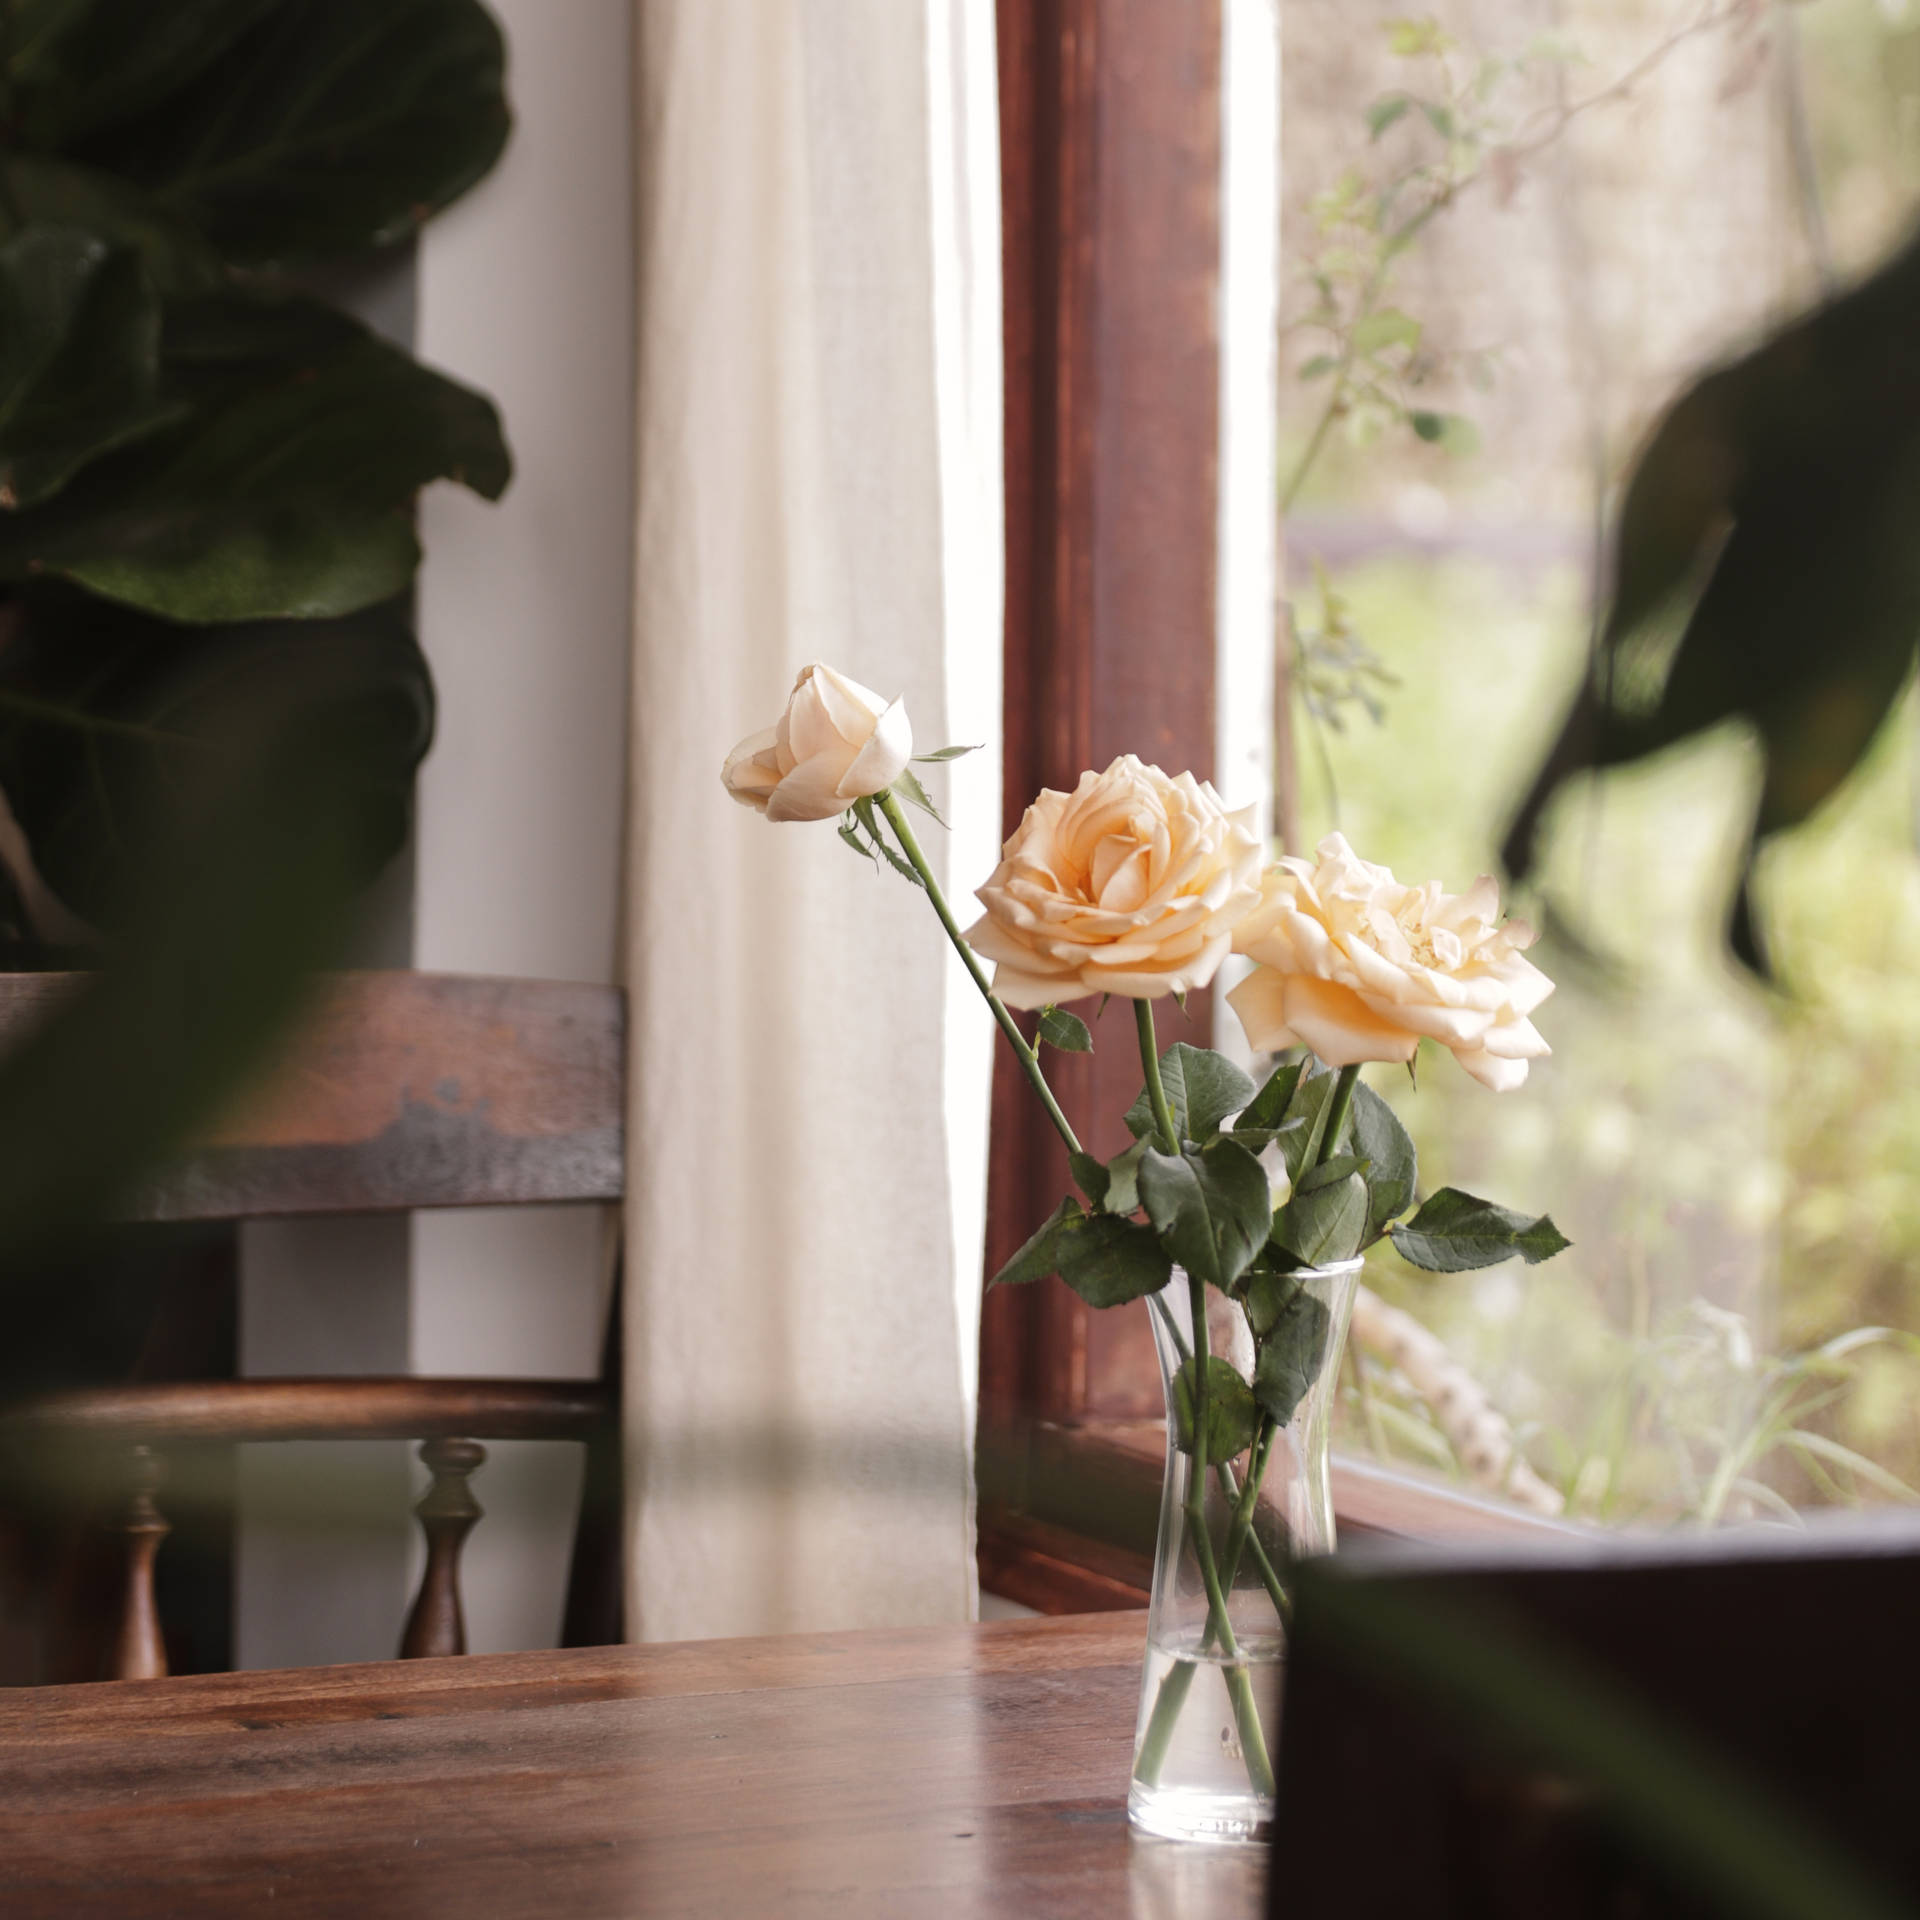 Aesthetic Rose Vase Background